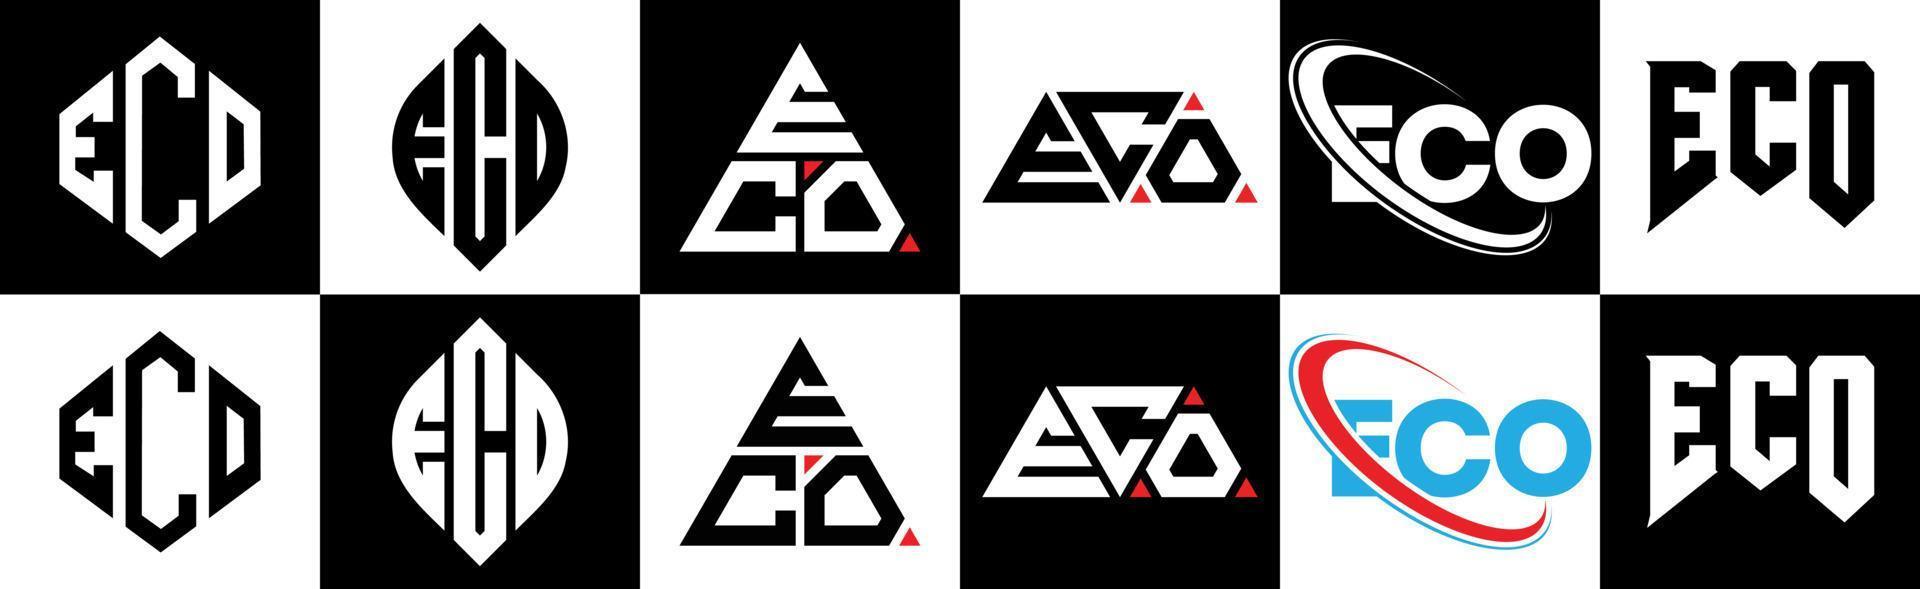 Öko-Brief-Logo-Design in sechs Stilen. Öko-Polygon, Kreis, Dreieck, Sechseck, flacher und einfacher Stil mit schwarz-weißem Buchstabenlogo in einer Zeichenfläche. Öko-minimalistisches und klassisches Logo vektor